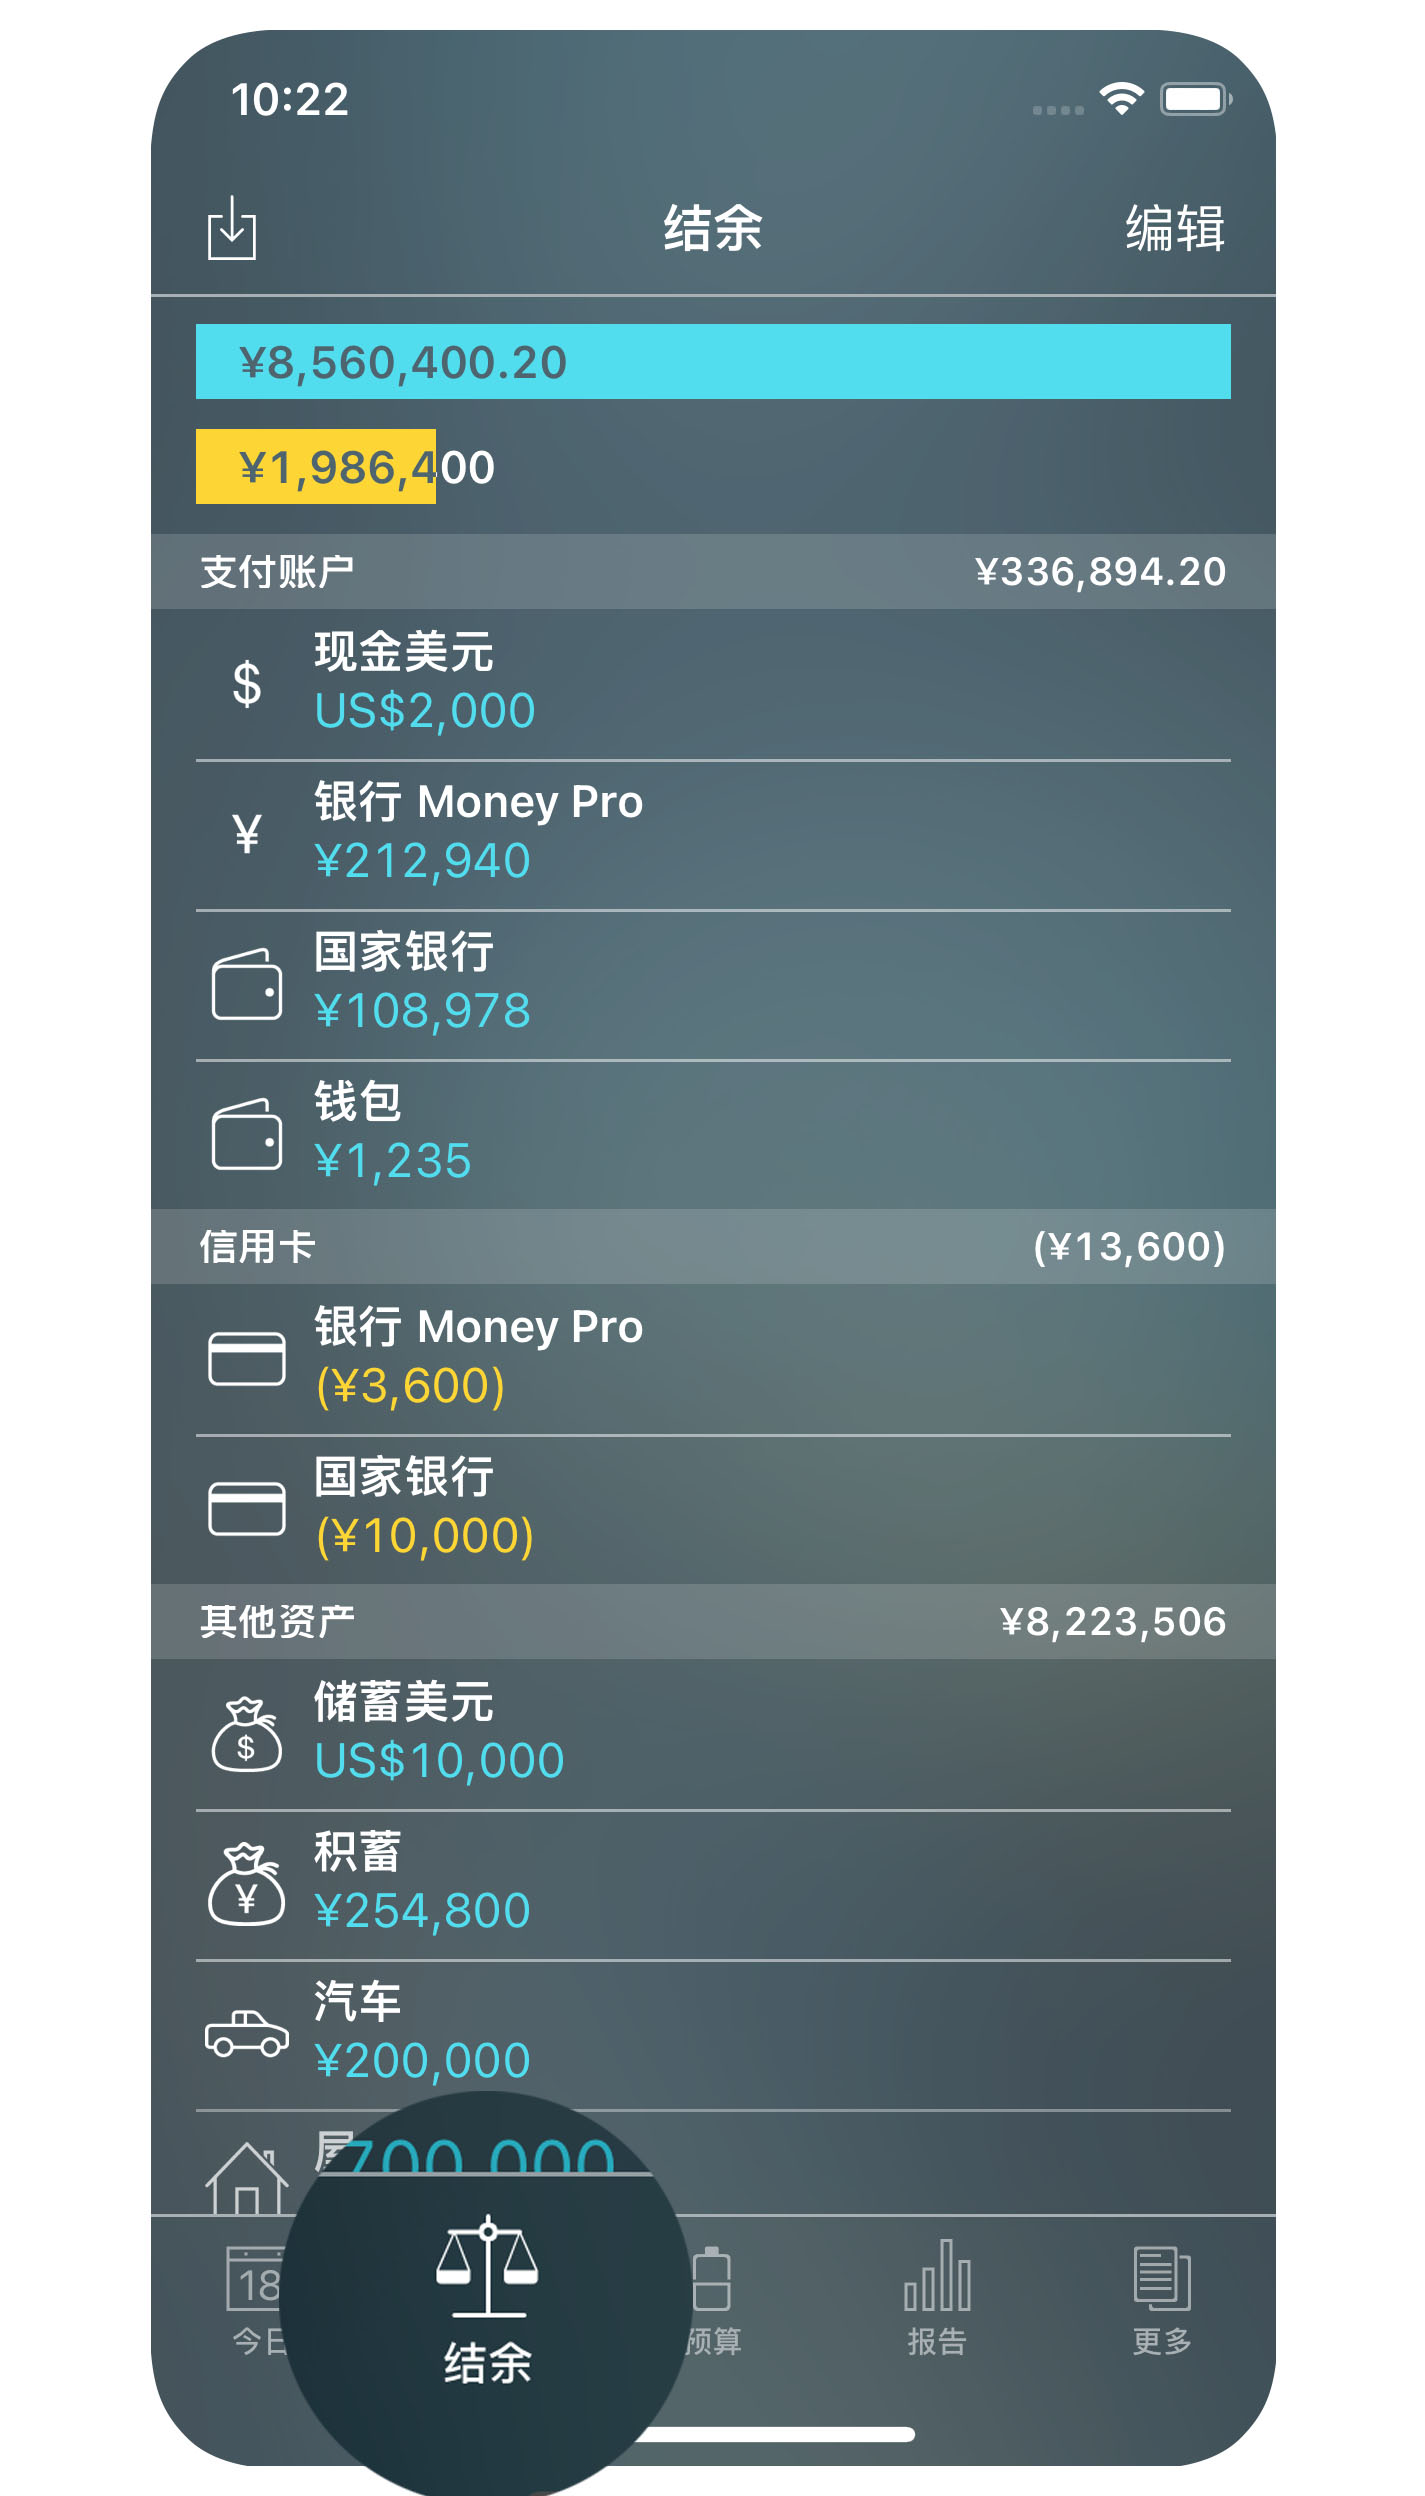 Money Pro - 账户 - iPhone